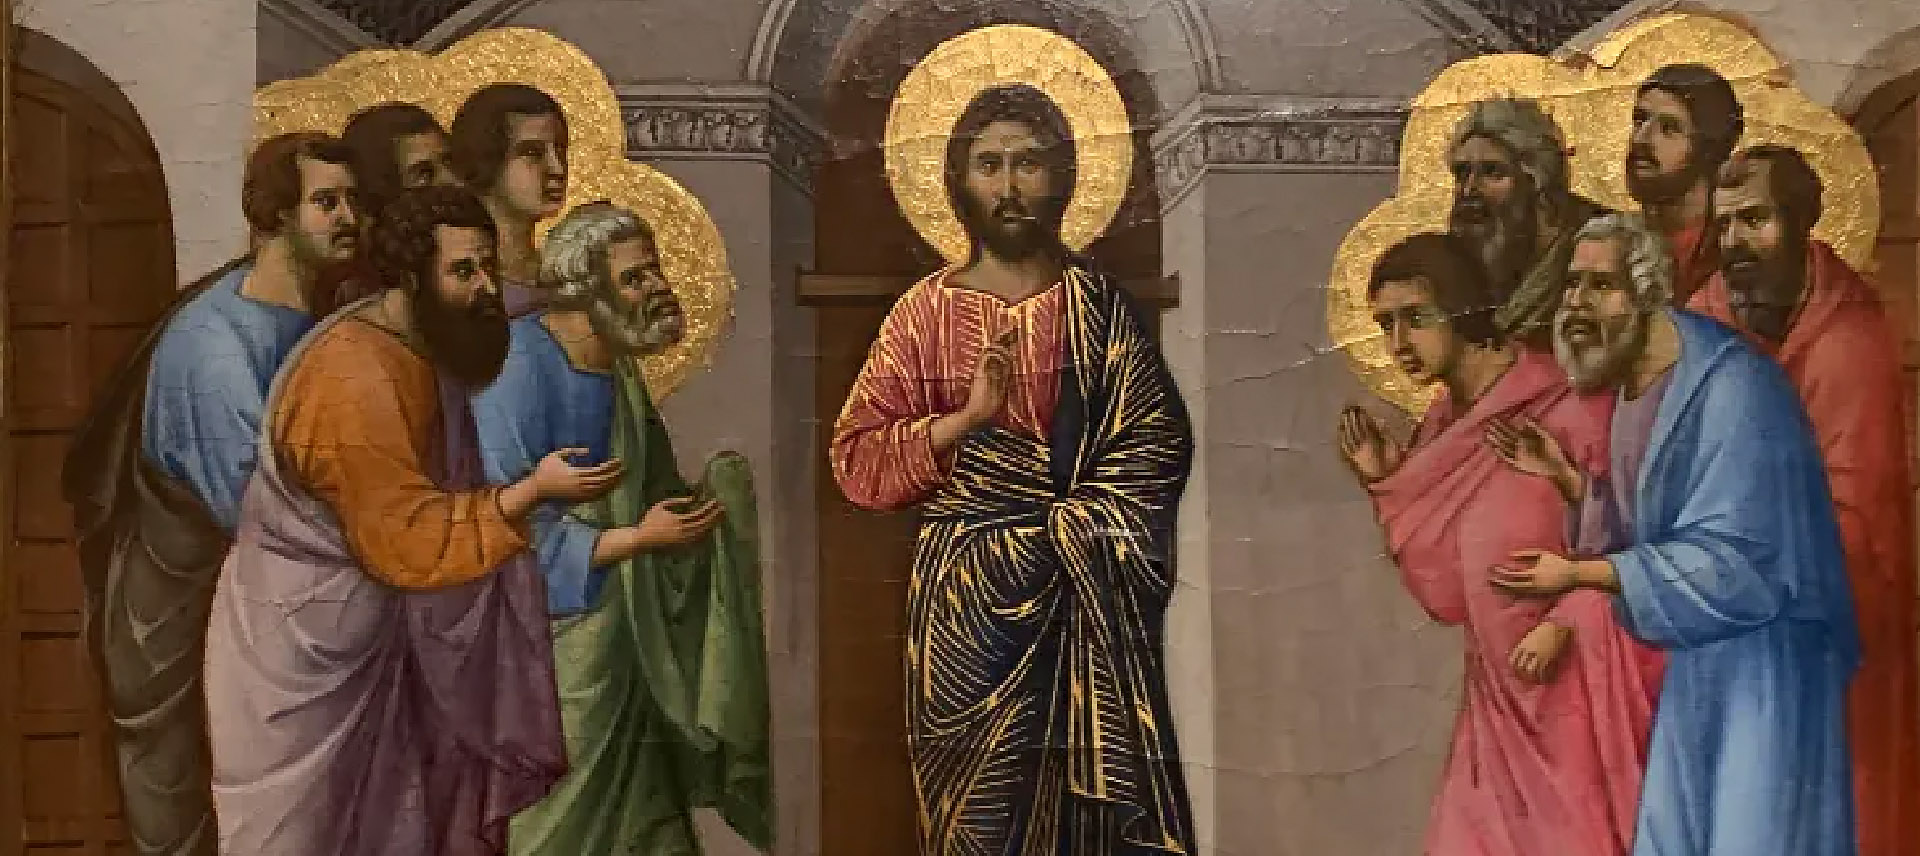 Jésus leur dit:
«Pourquoi êtes-vous bouleversés?" | Première apparition du Christ aux apôtres/Détail. Duccio di Buoninsegna. Peinture sur bois. Entre 1308 et 1311.